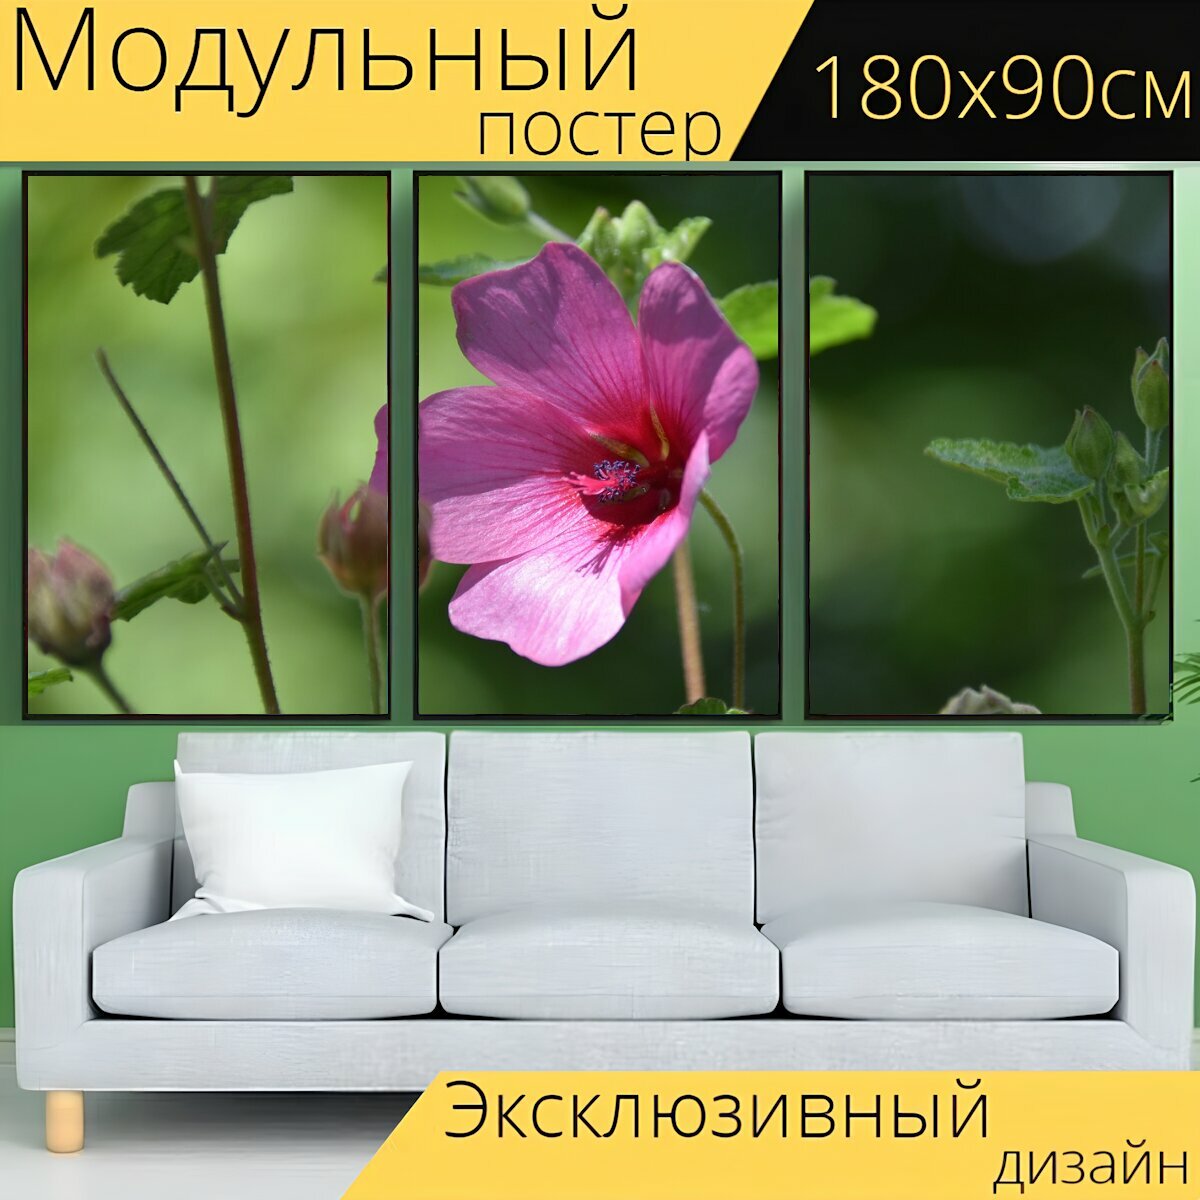 Модульный постер "Цветок, цветок цвет розовый, зеленые листья" 180 x 90 см. для интерьера